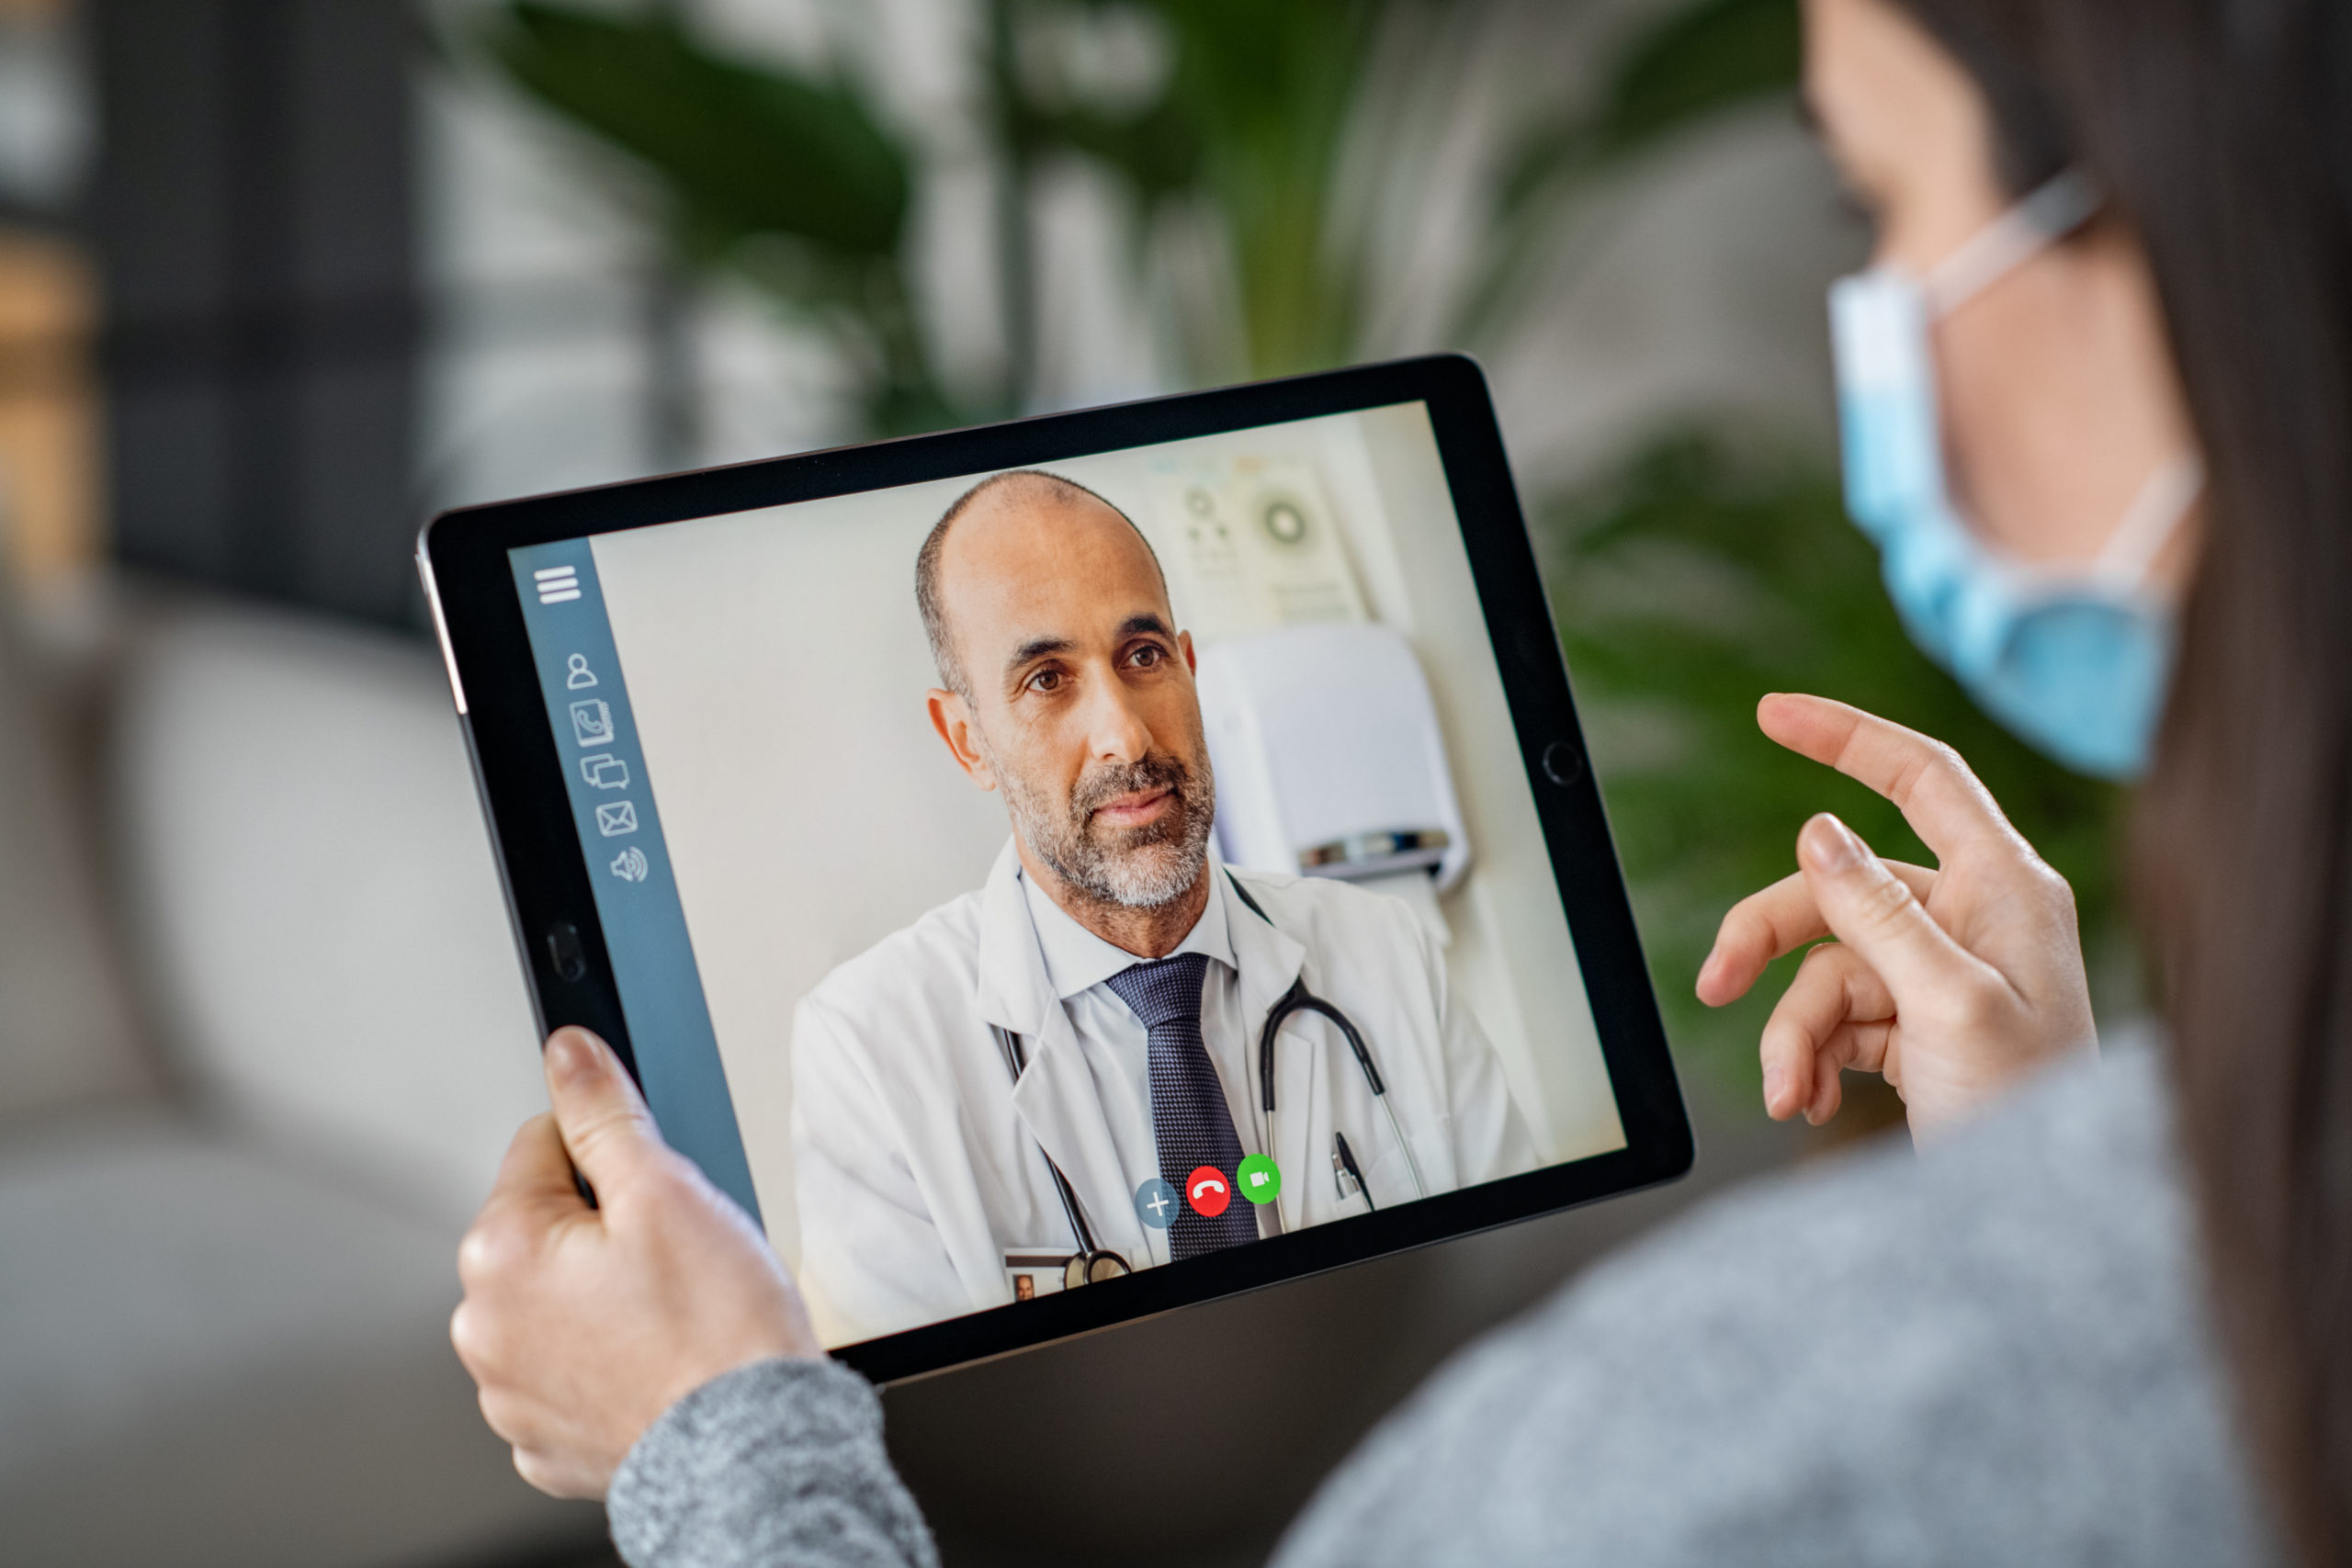 App de telemedicina Olá Doutor já realiza de mais de mil consultas ao mês -  Saúde Digital News